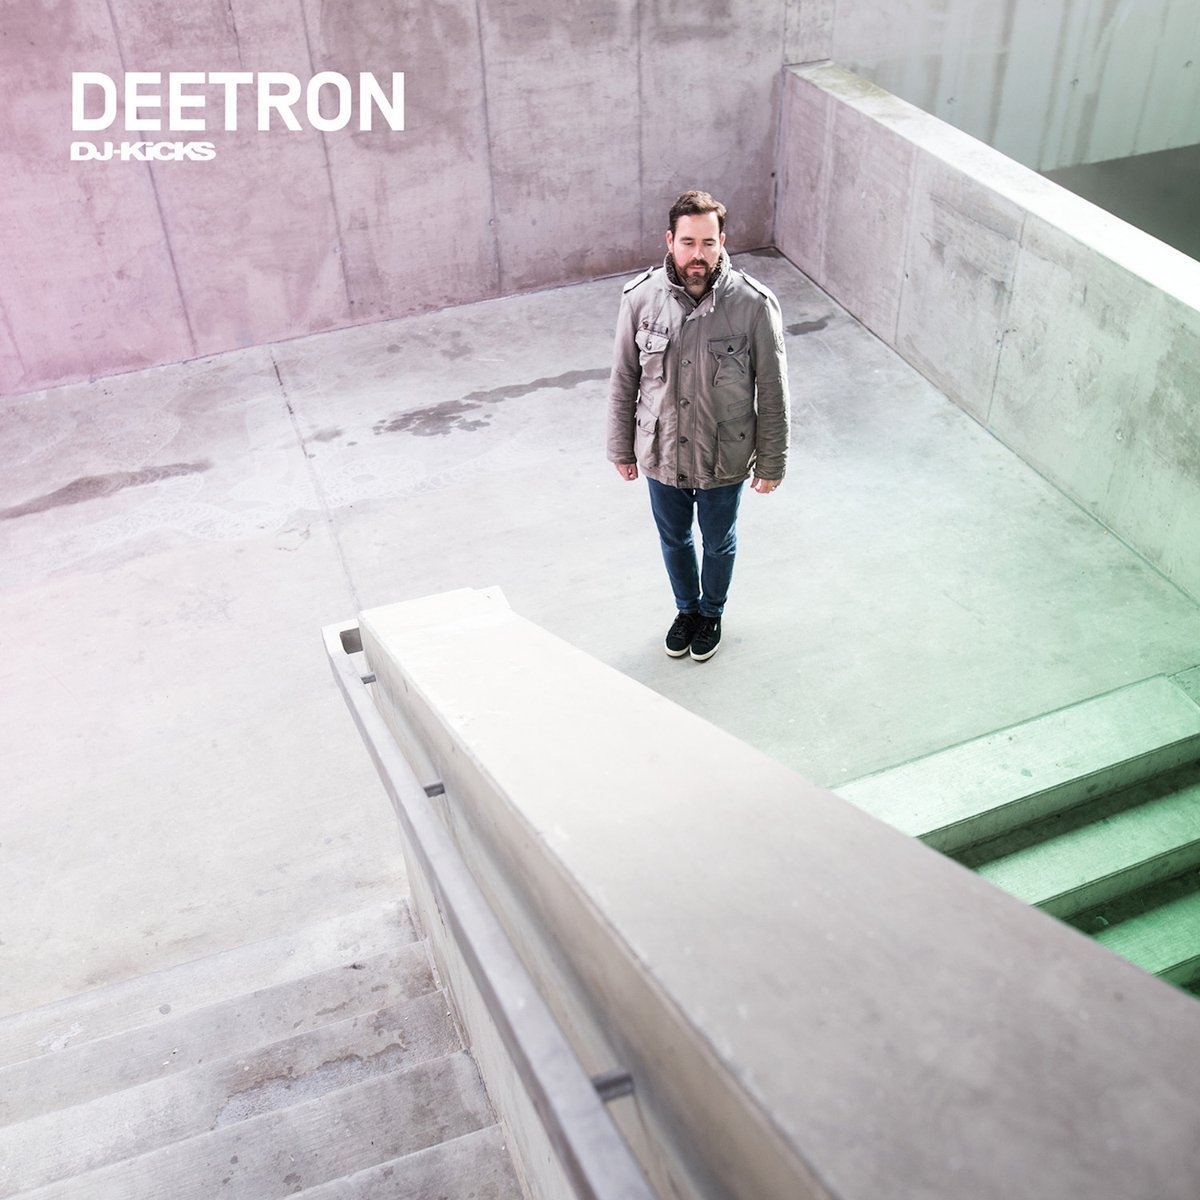 electro 04 18 Deetron